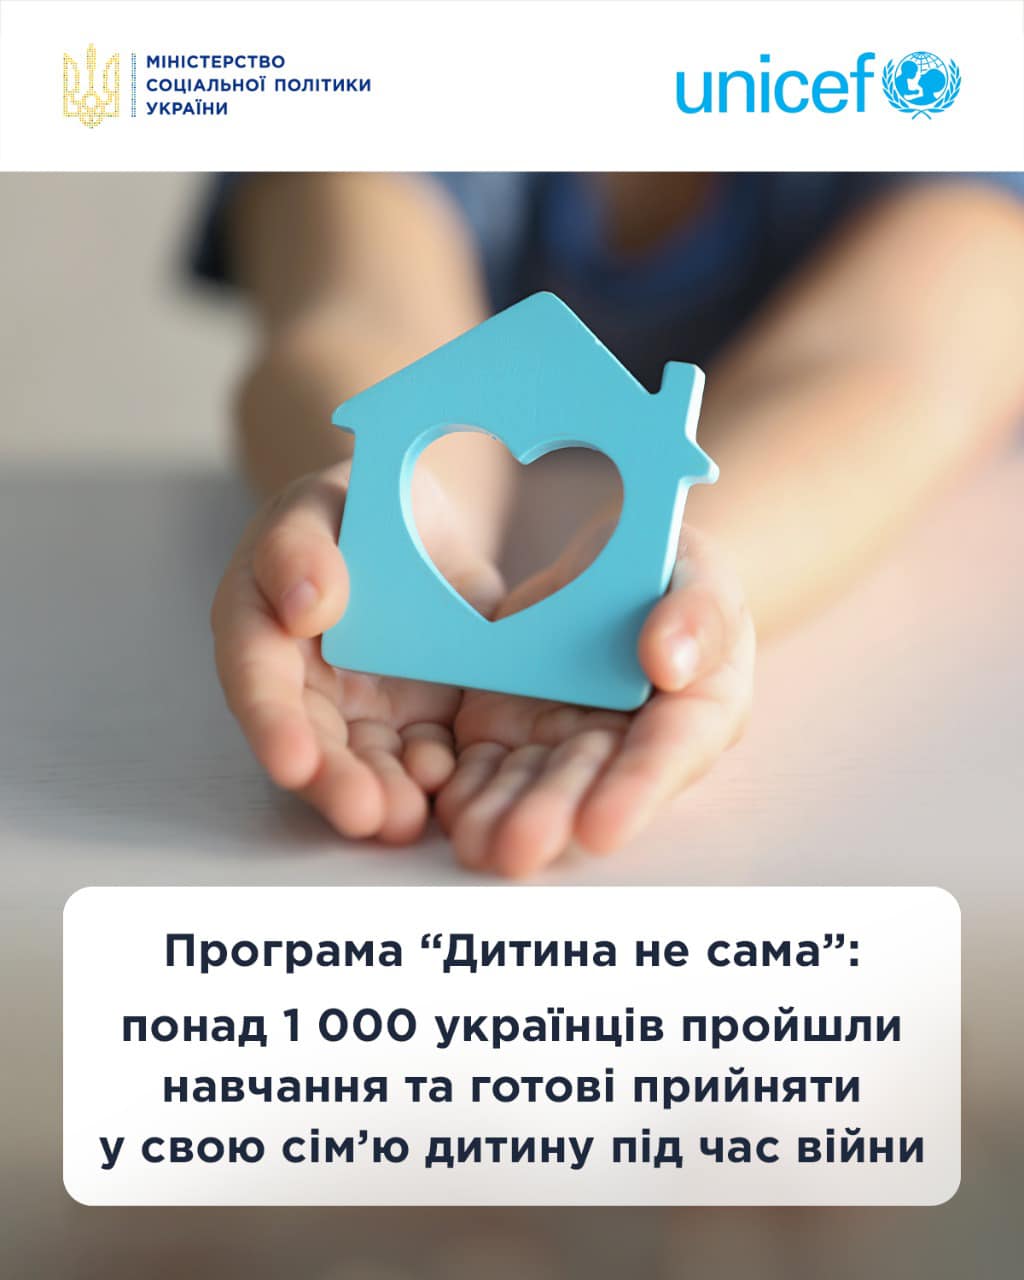 Програма “Дитина не сама”: понад 1 000 українців пройшли навчання та готові прийняти у свою сім’ю дитину під час війни